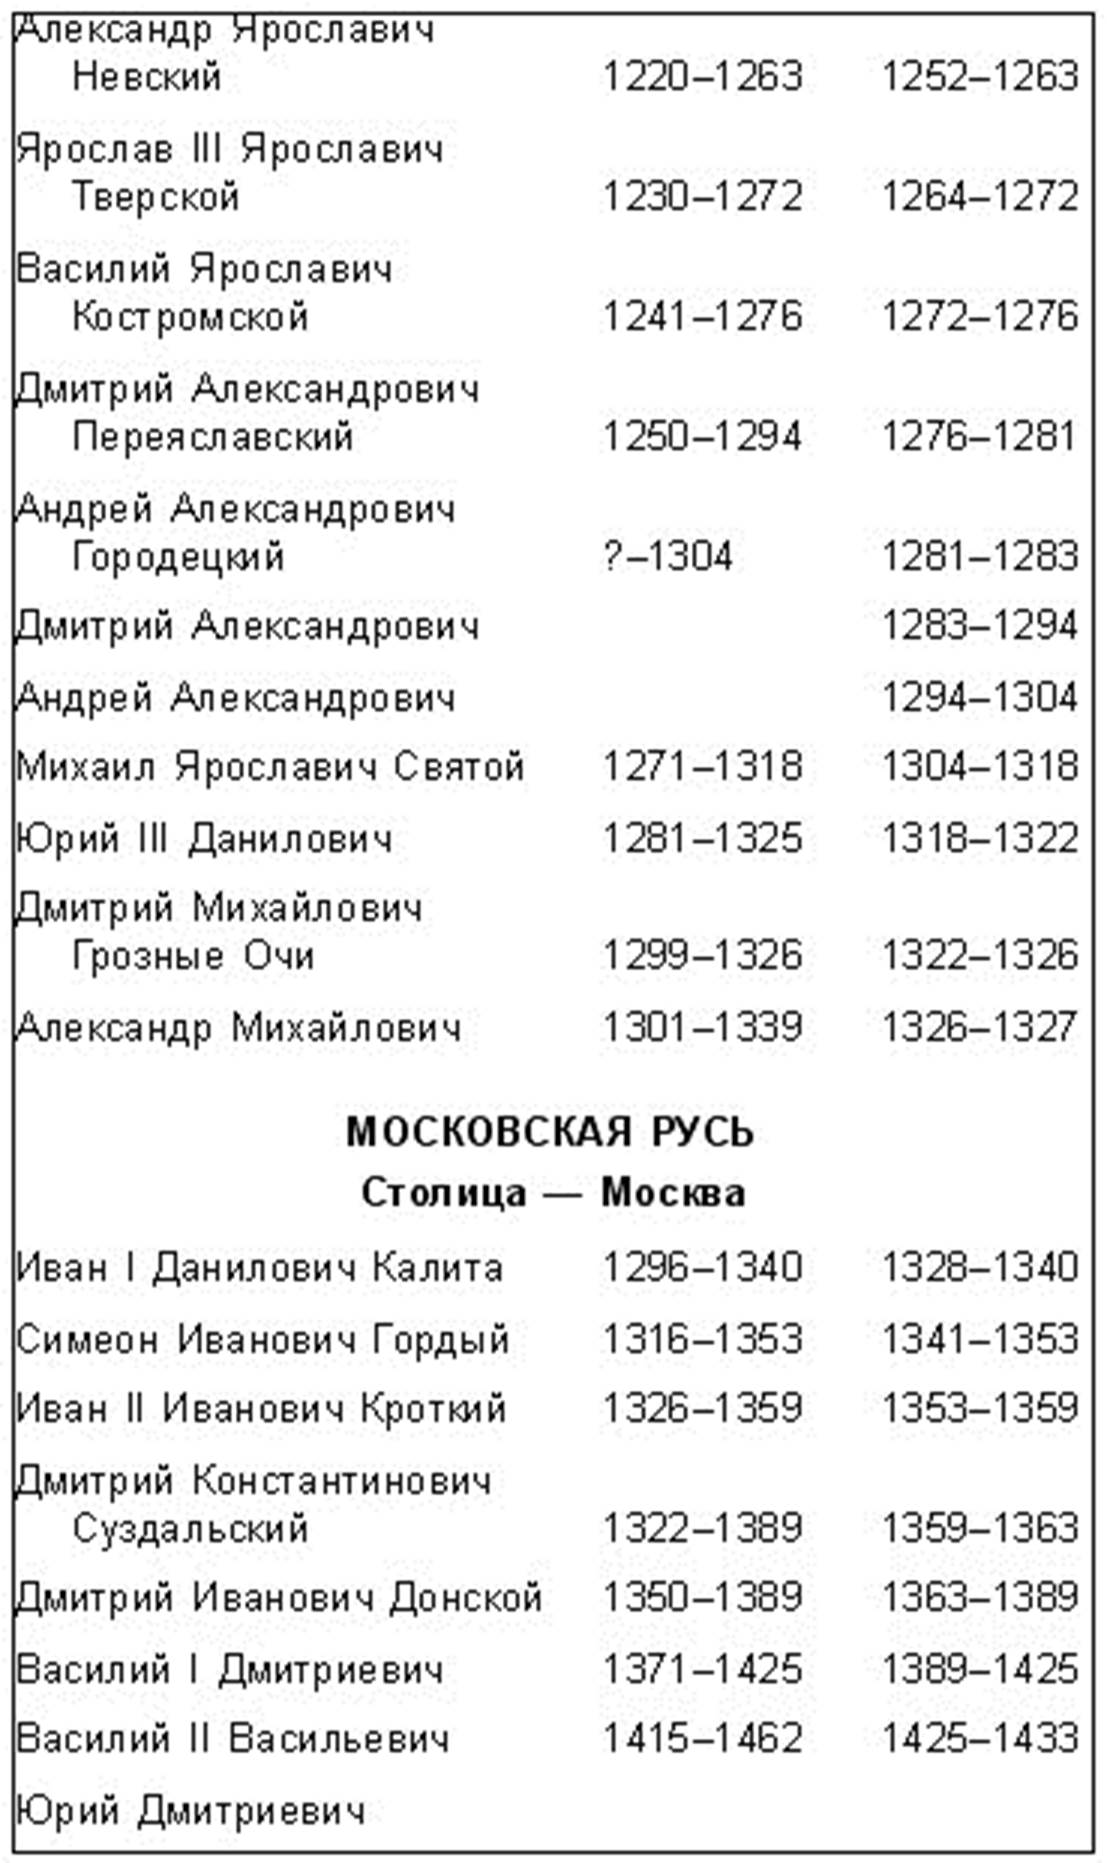 Хронологическая таблица царей Руси